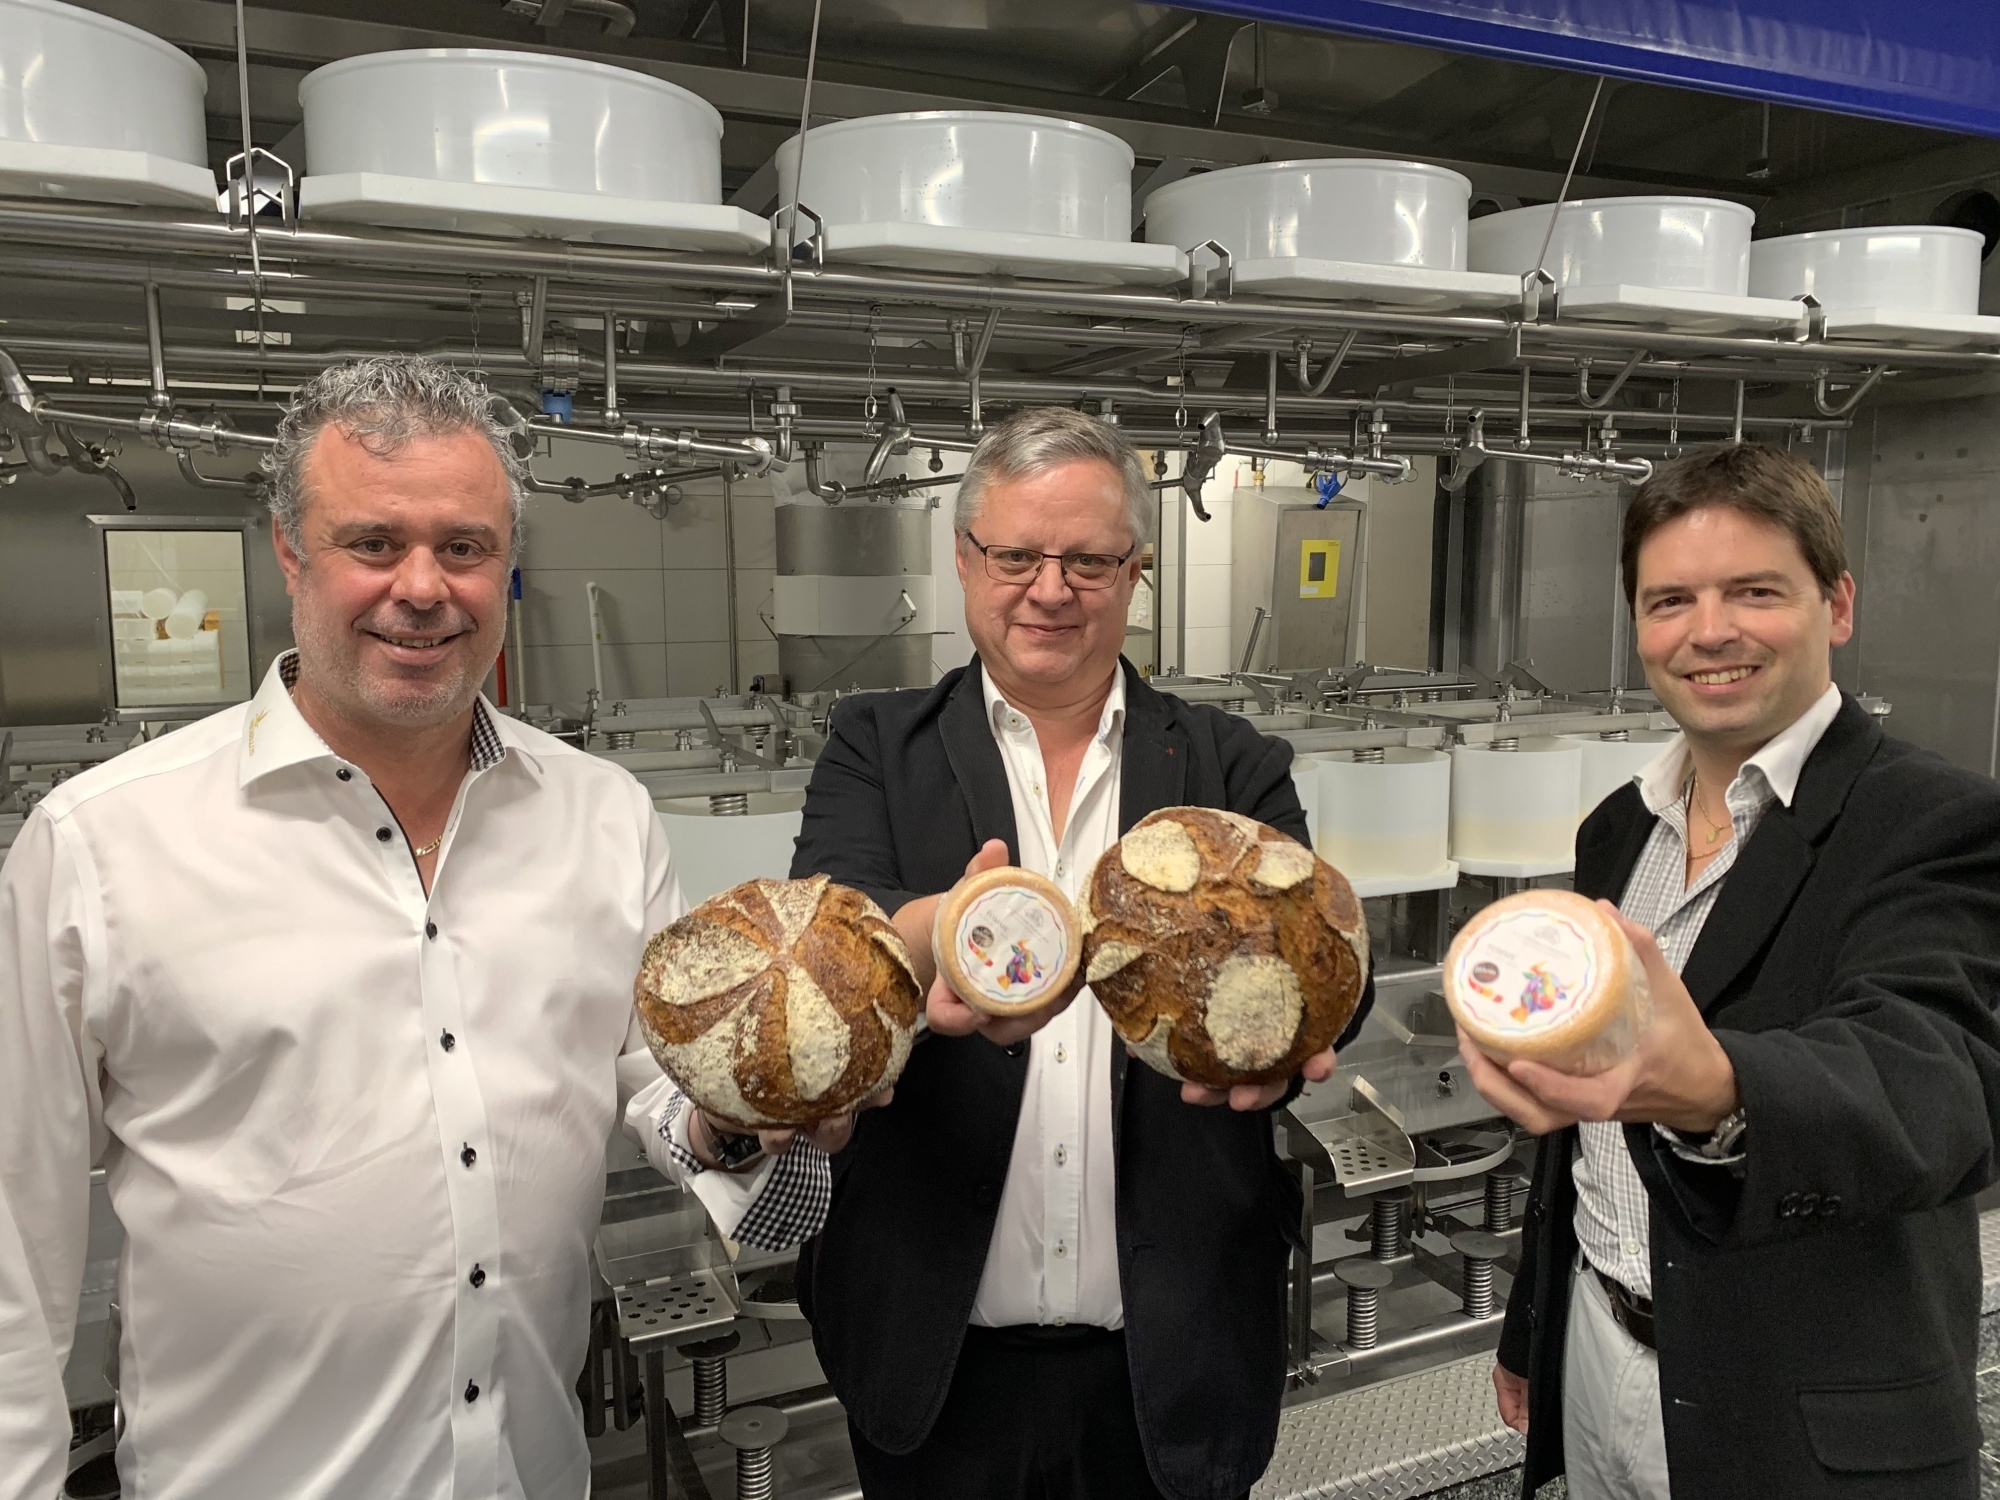 Les trois partenaires - Didier Michellod, Alain Claret et Simon Tornay - présentent les produits exclusifs créés pour le groupe Edelweiss Market - 13* PAM Valais.